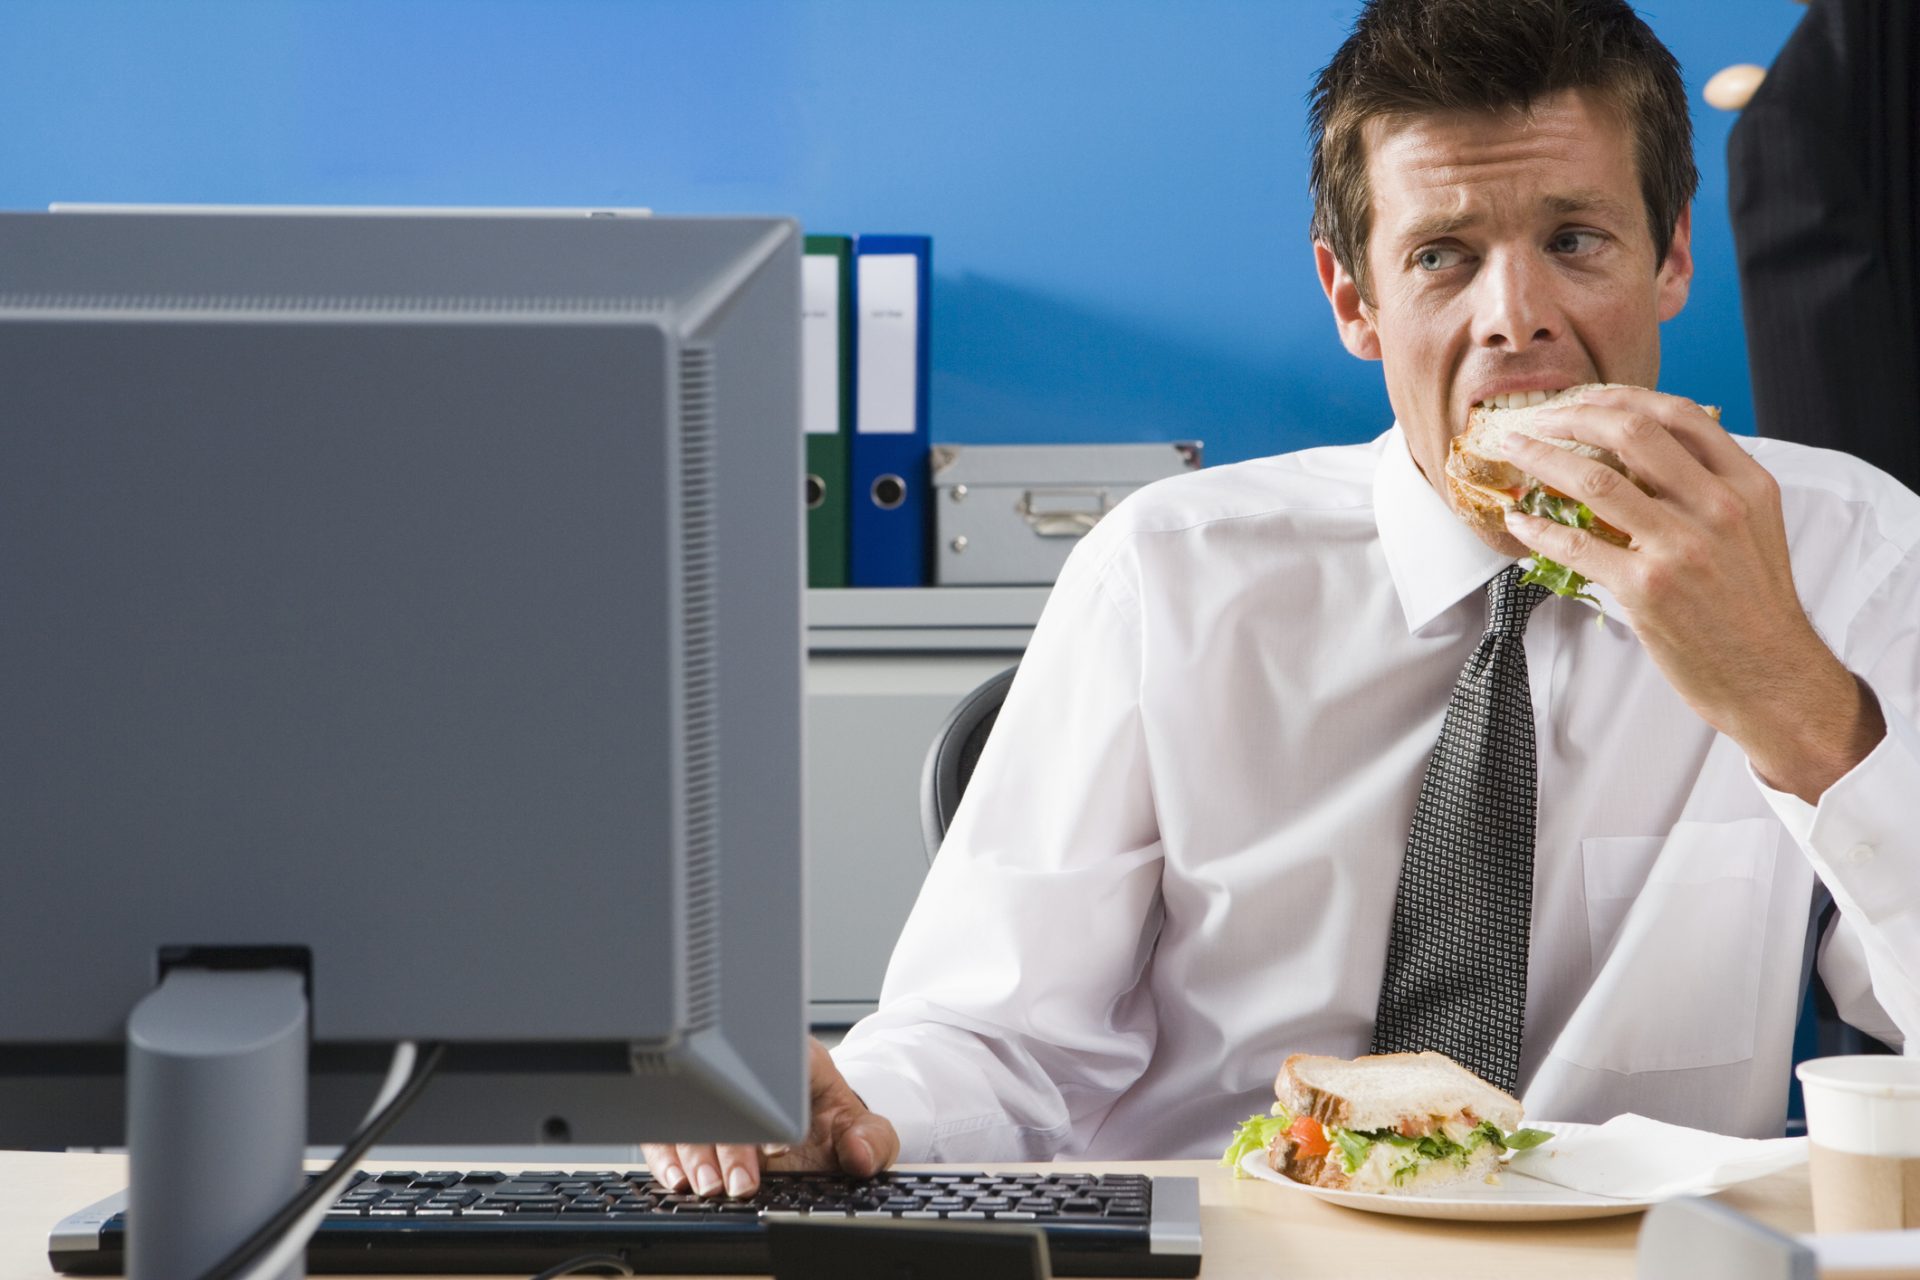 4 von 5 US-Arbeitern essen ihr Mittagessen an ihrem Schreibtisch